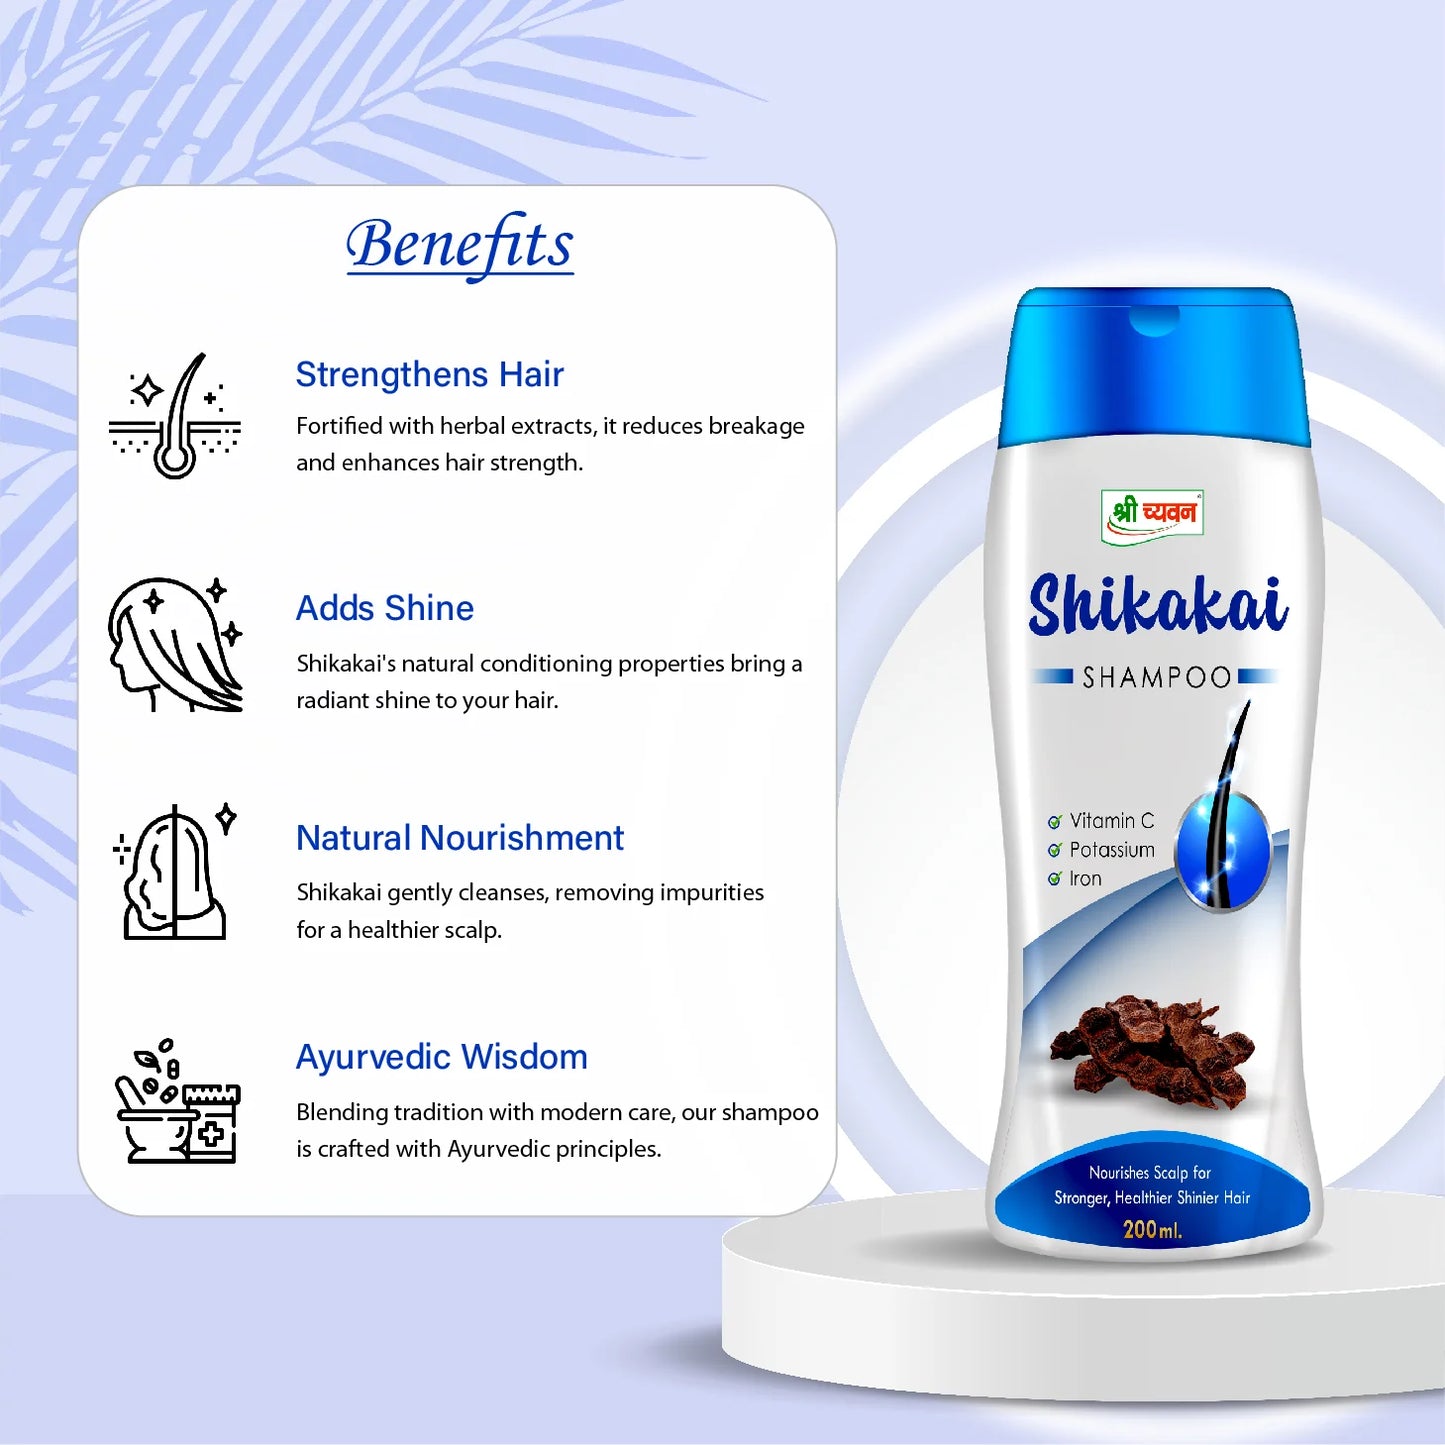 Shikakai shampoo benefits